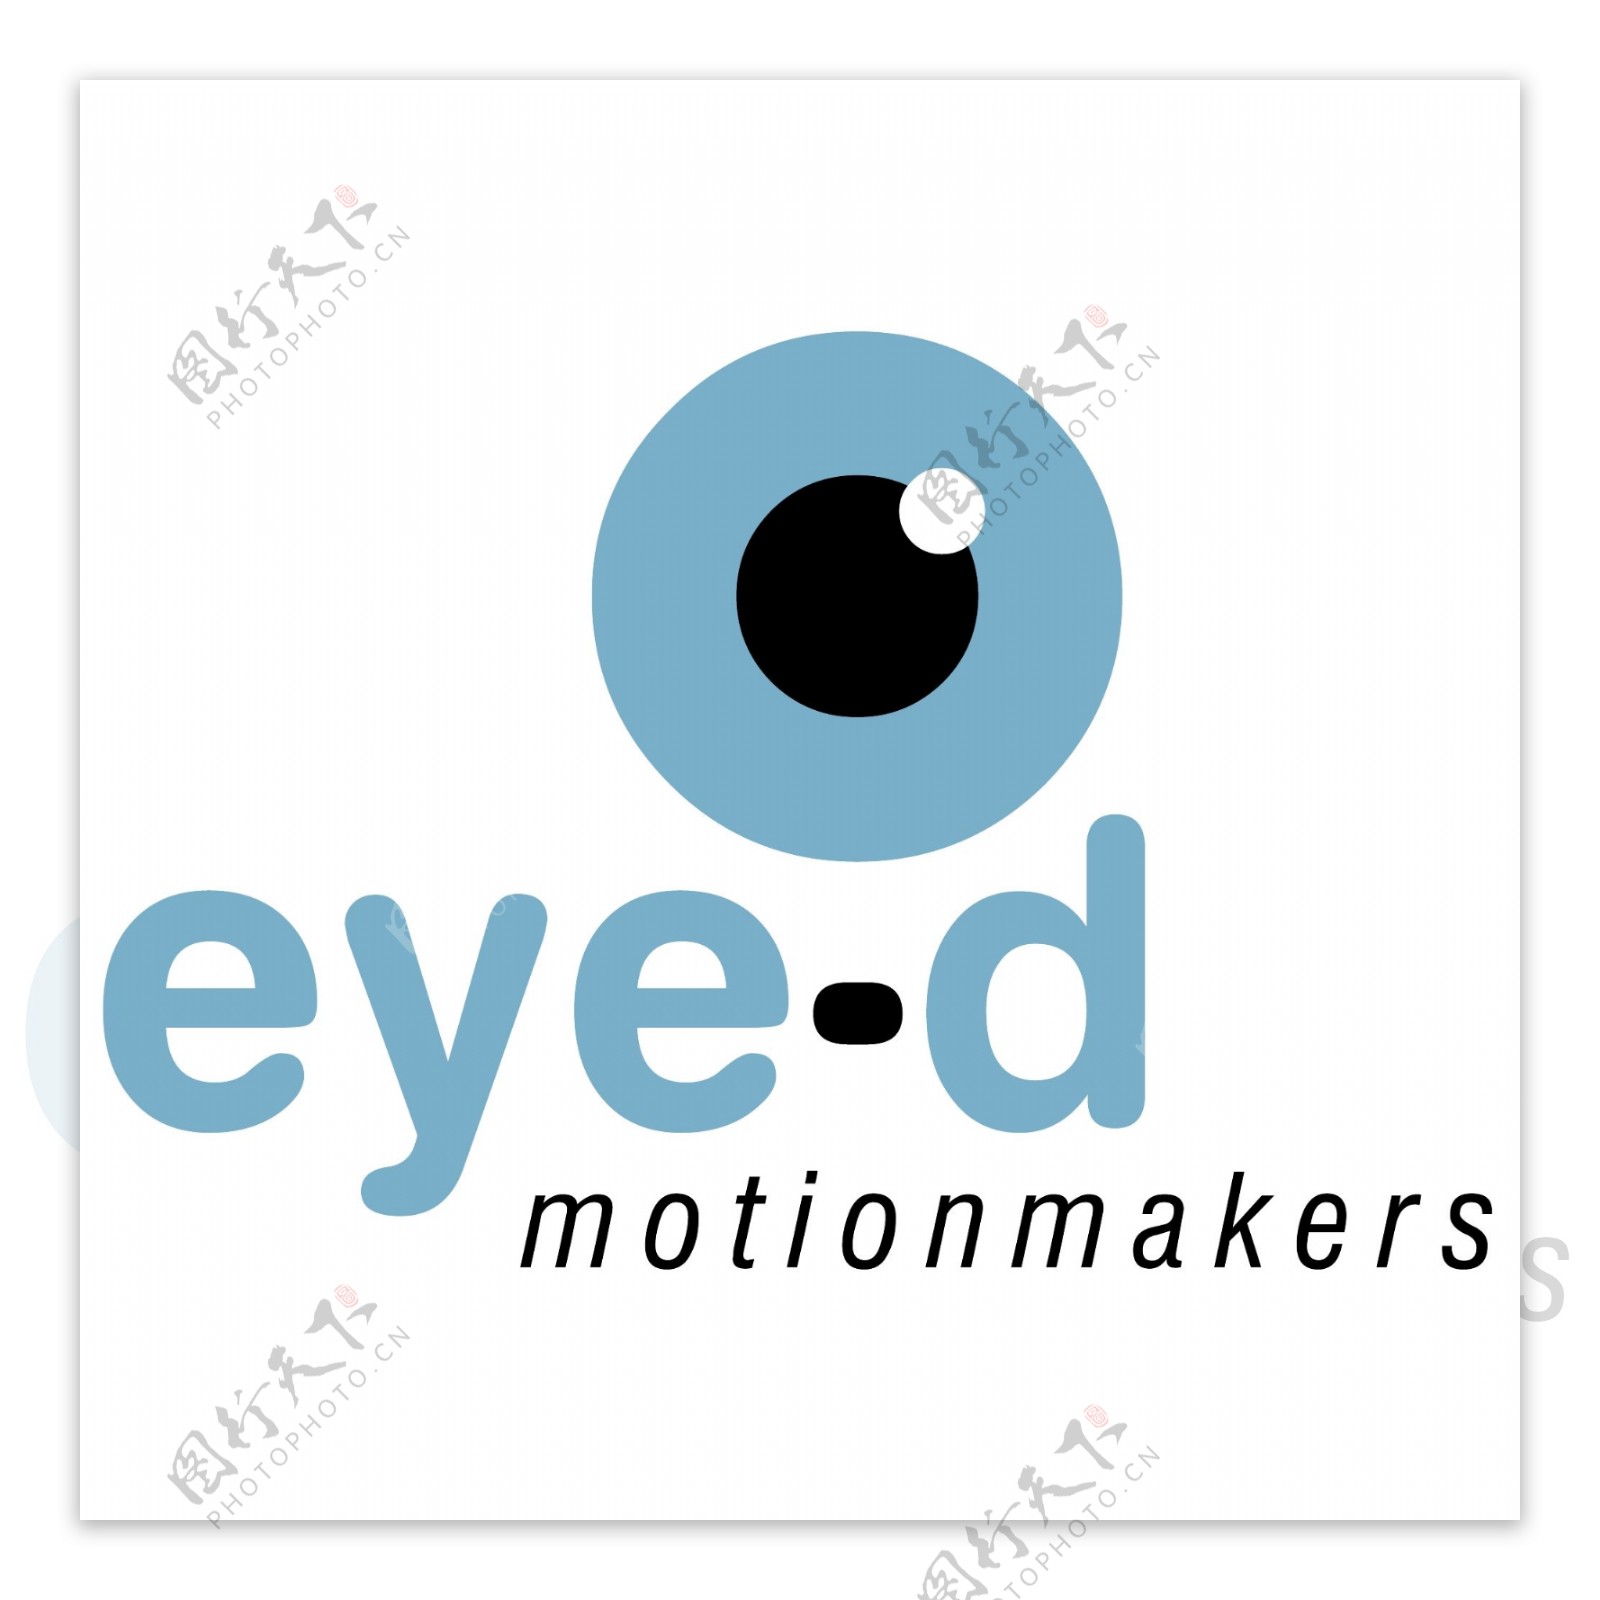 眼睛的motionmakers